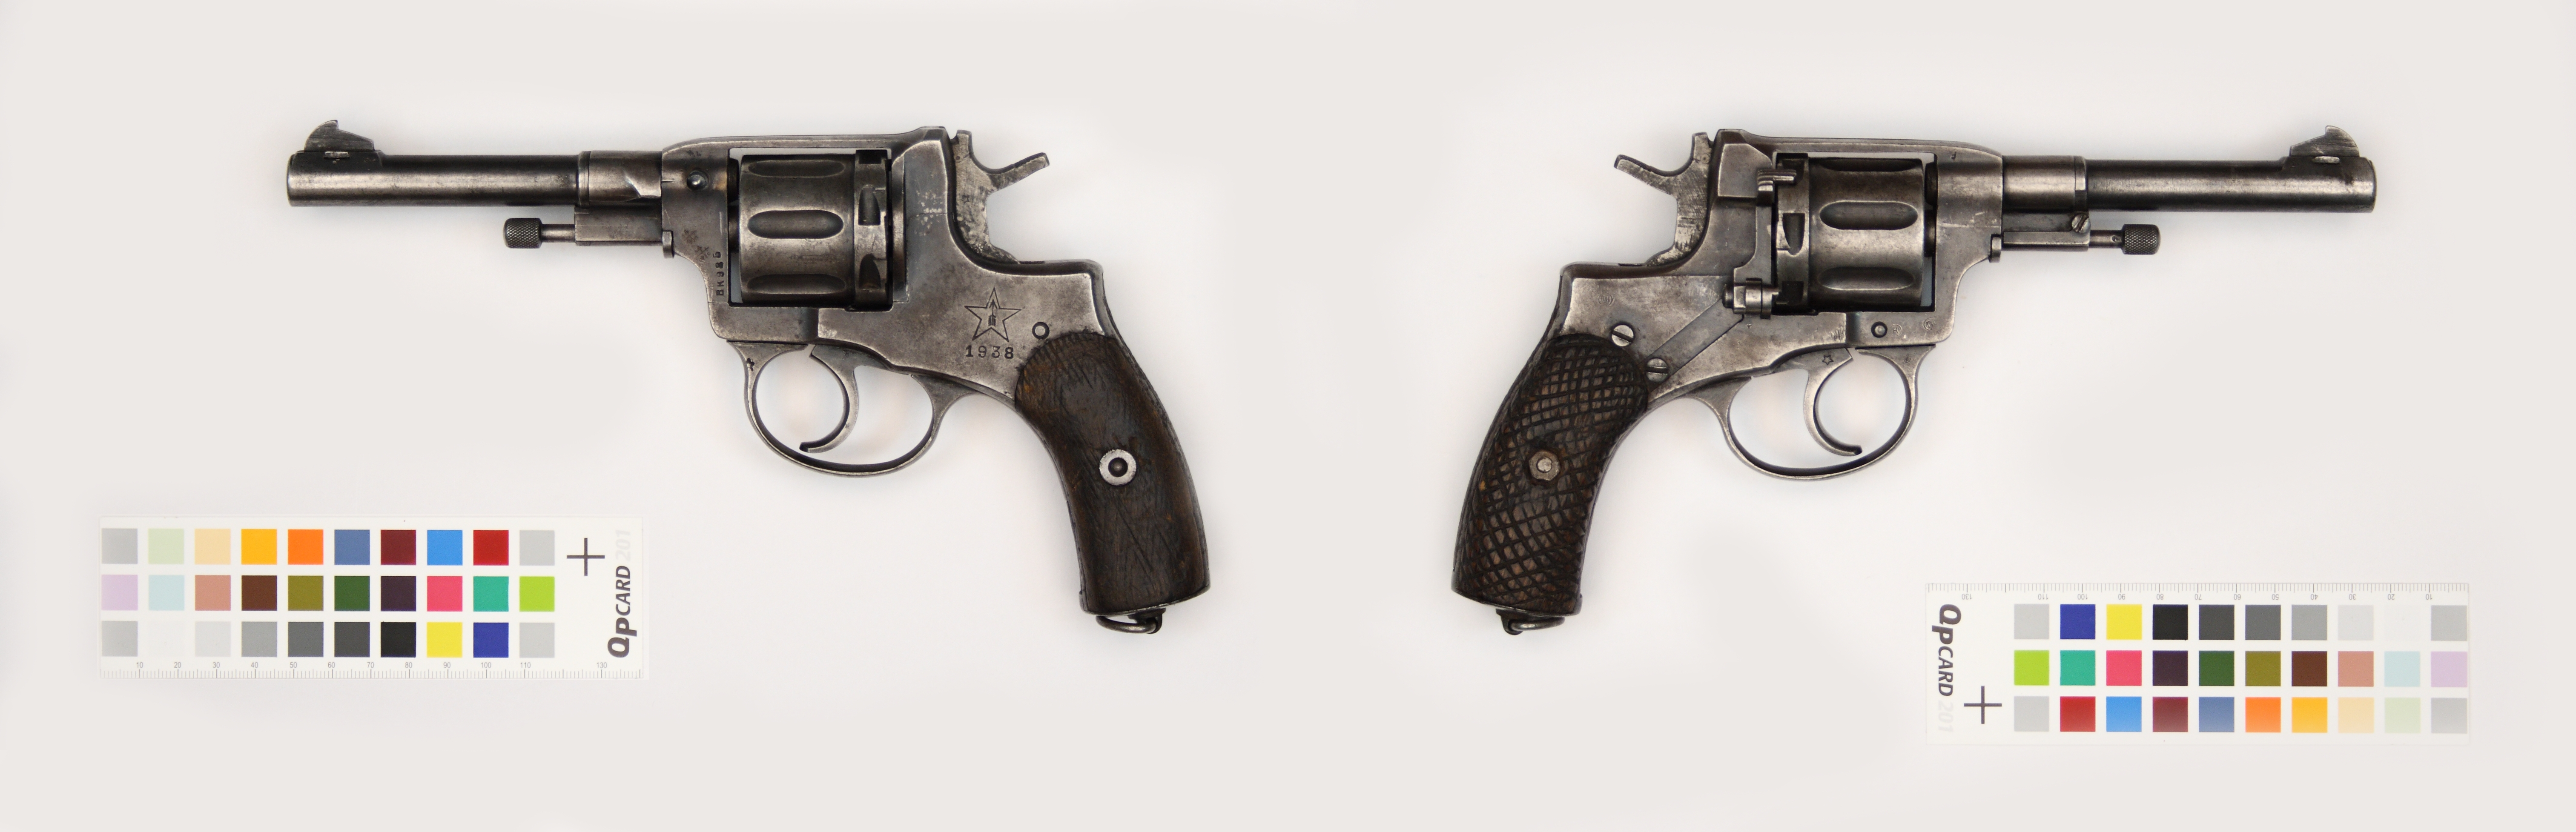 Revolver Sistemy Nagana obr 1895g (Nagant Model 1895)